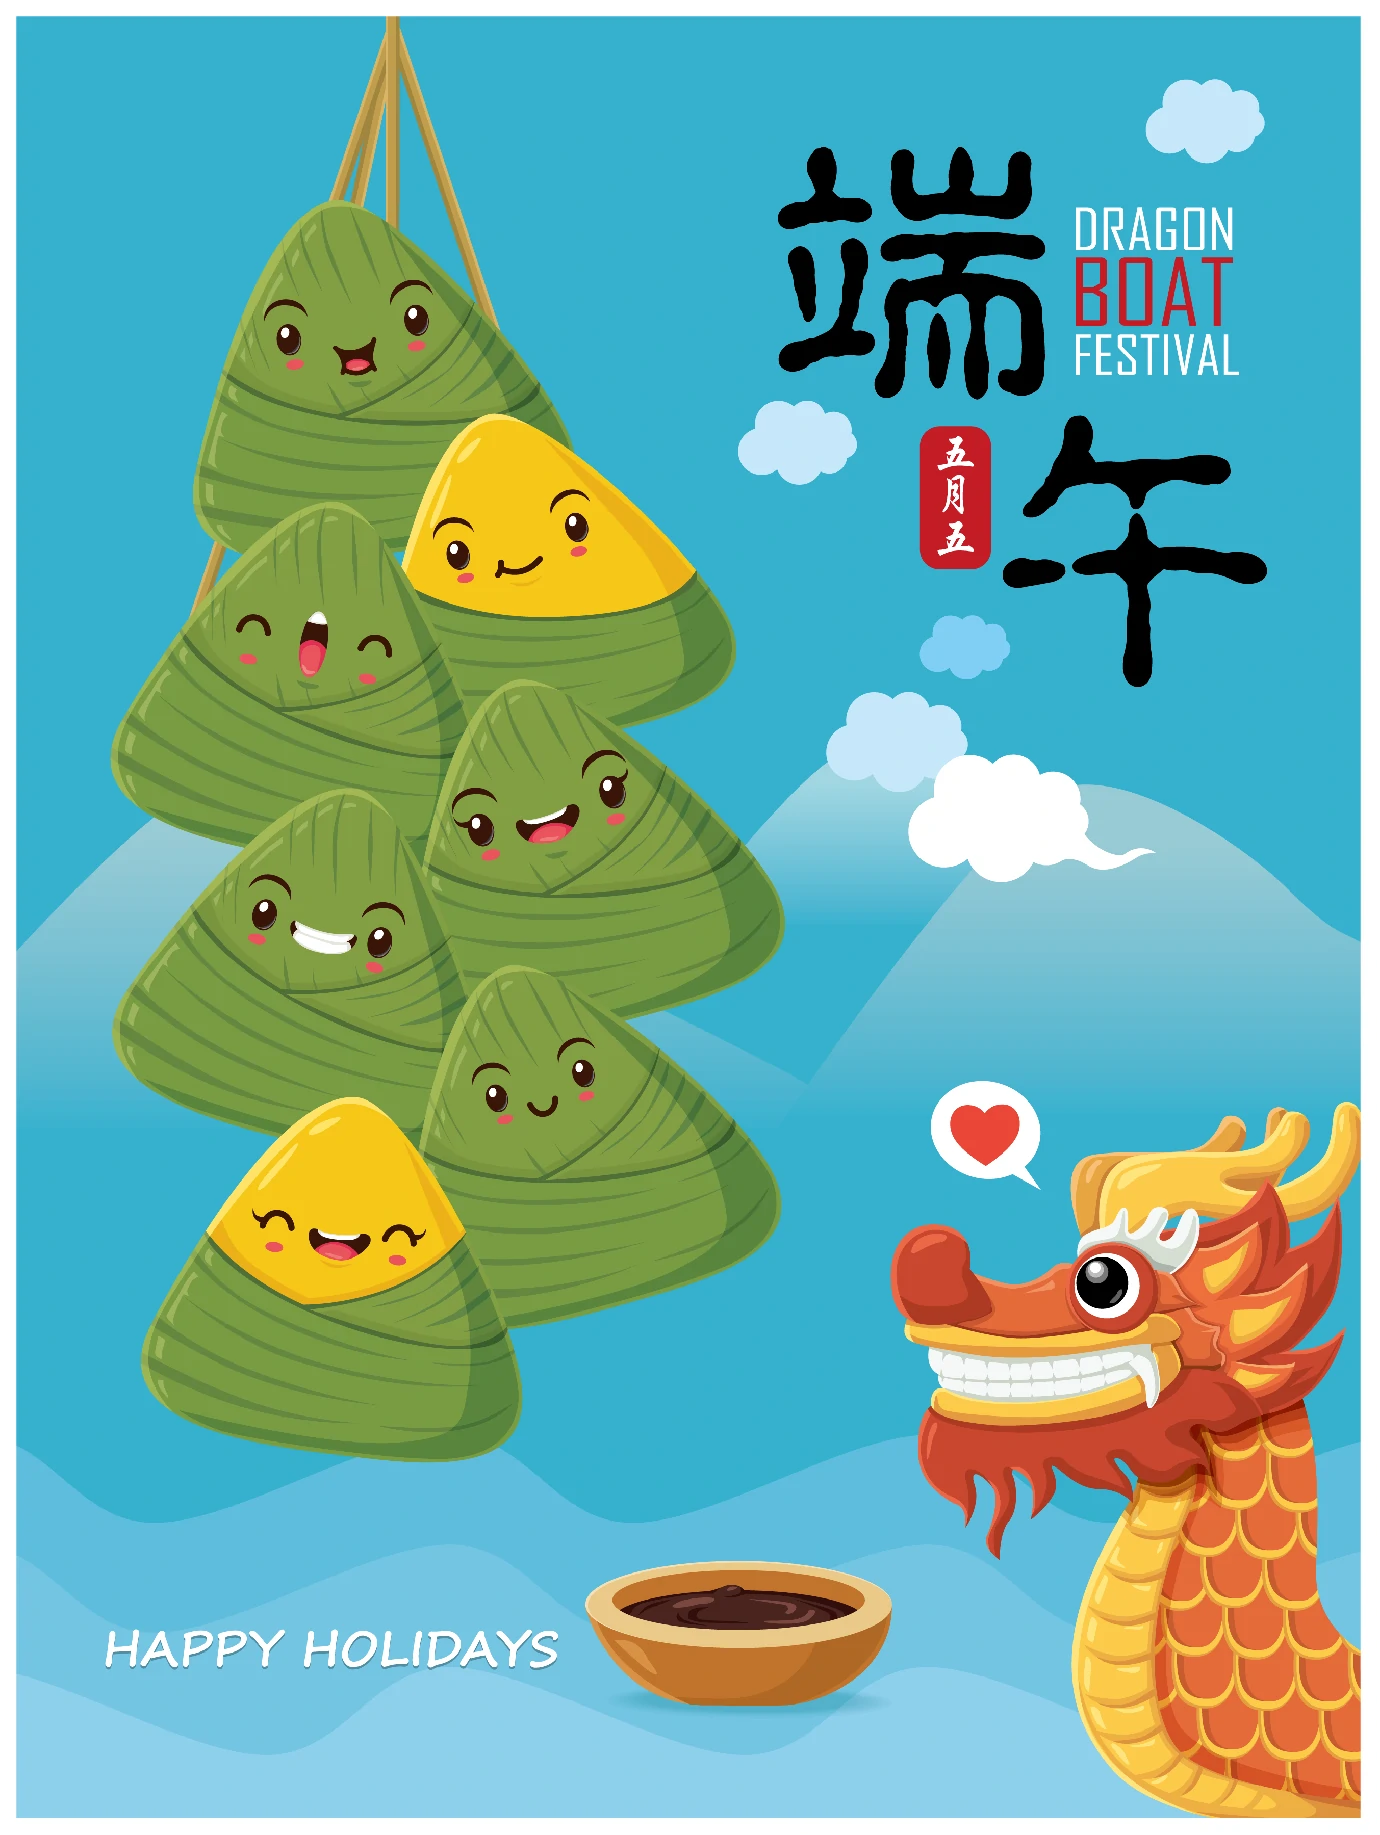 中国传统节日卡通手绘端午节赛龙舟粽子插画海报AI矢量设计素材【015】